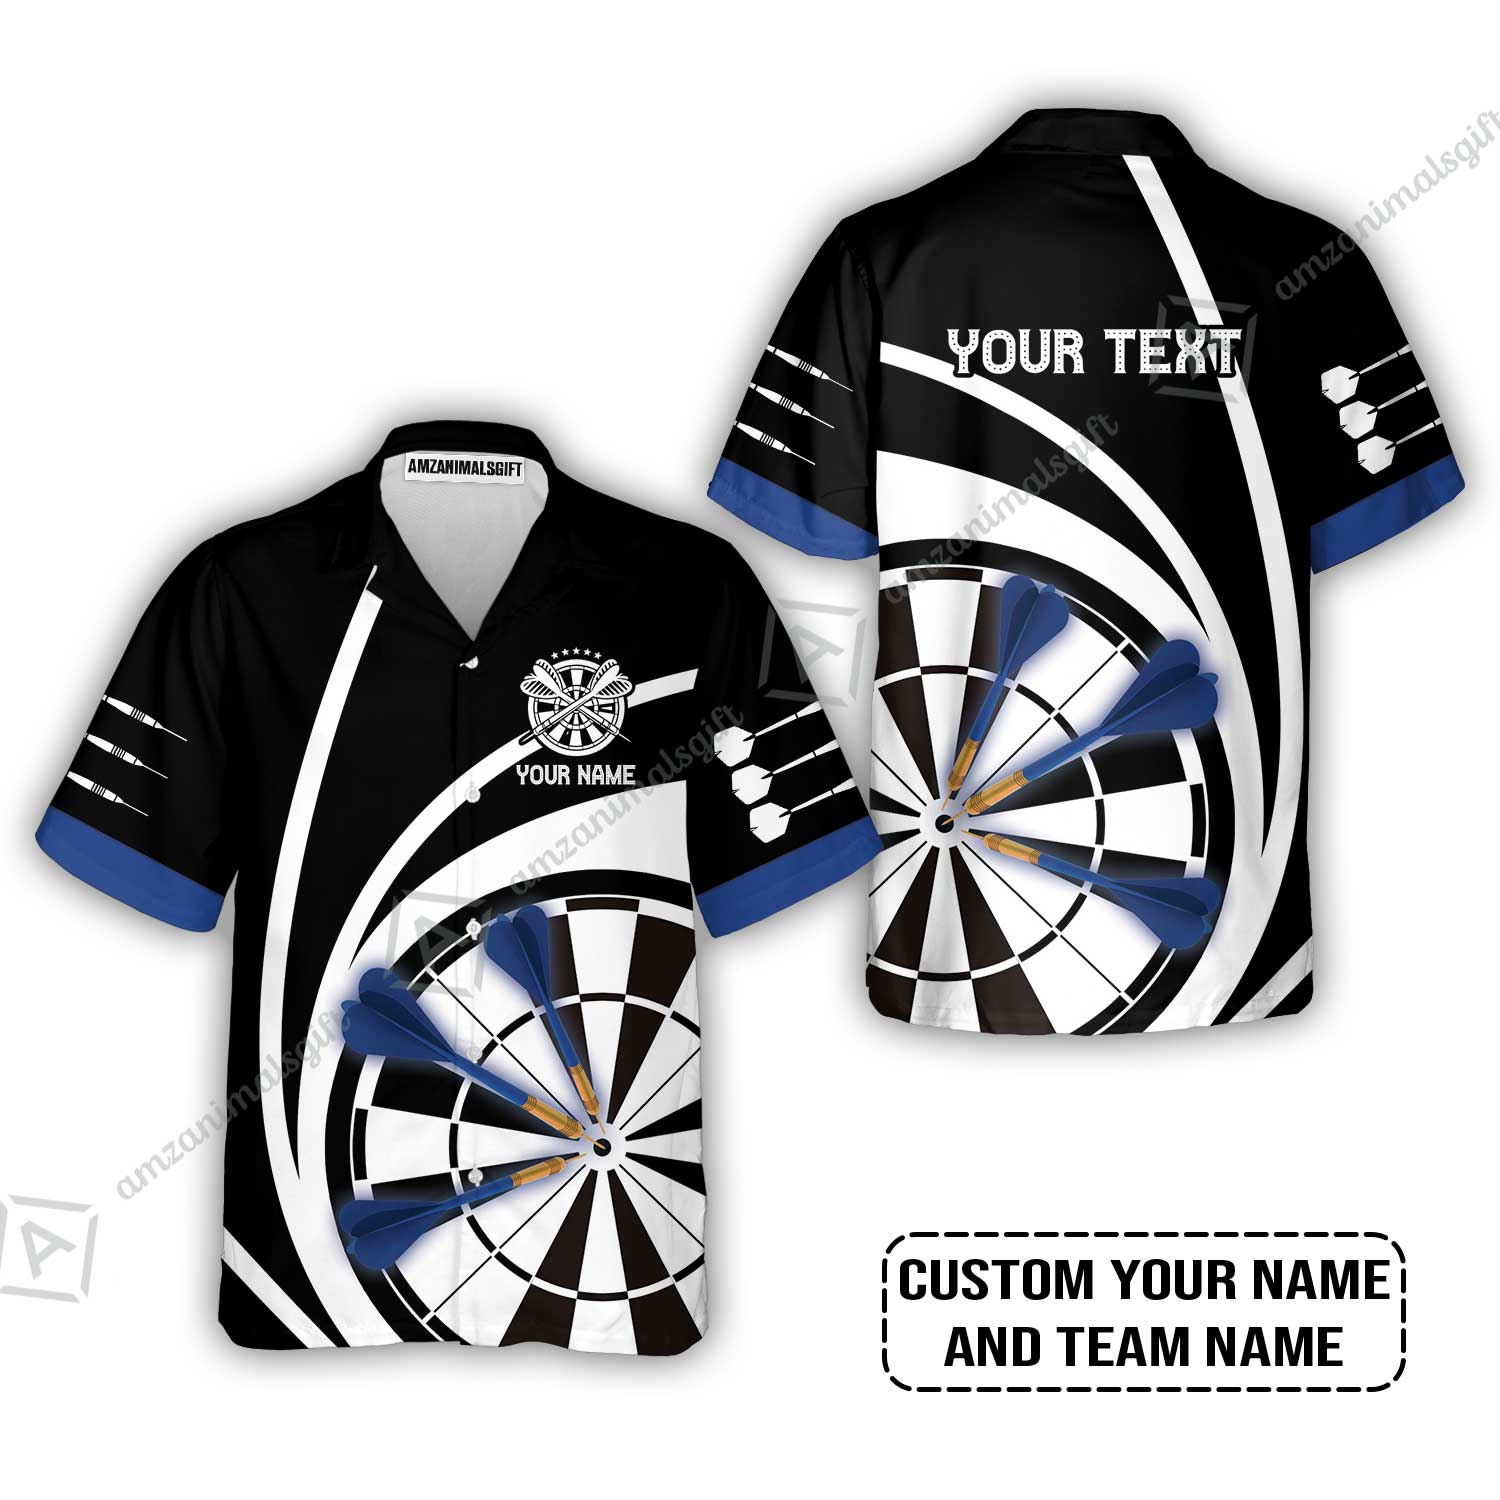 Customized Name & Text Darts Hawaiian Shirt, Personalized Name Blue Dark Darts Team Hawaiian Shirt